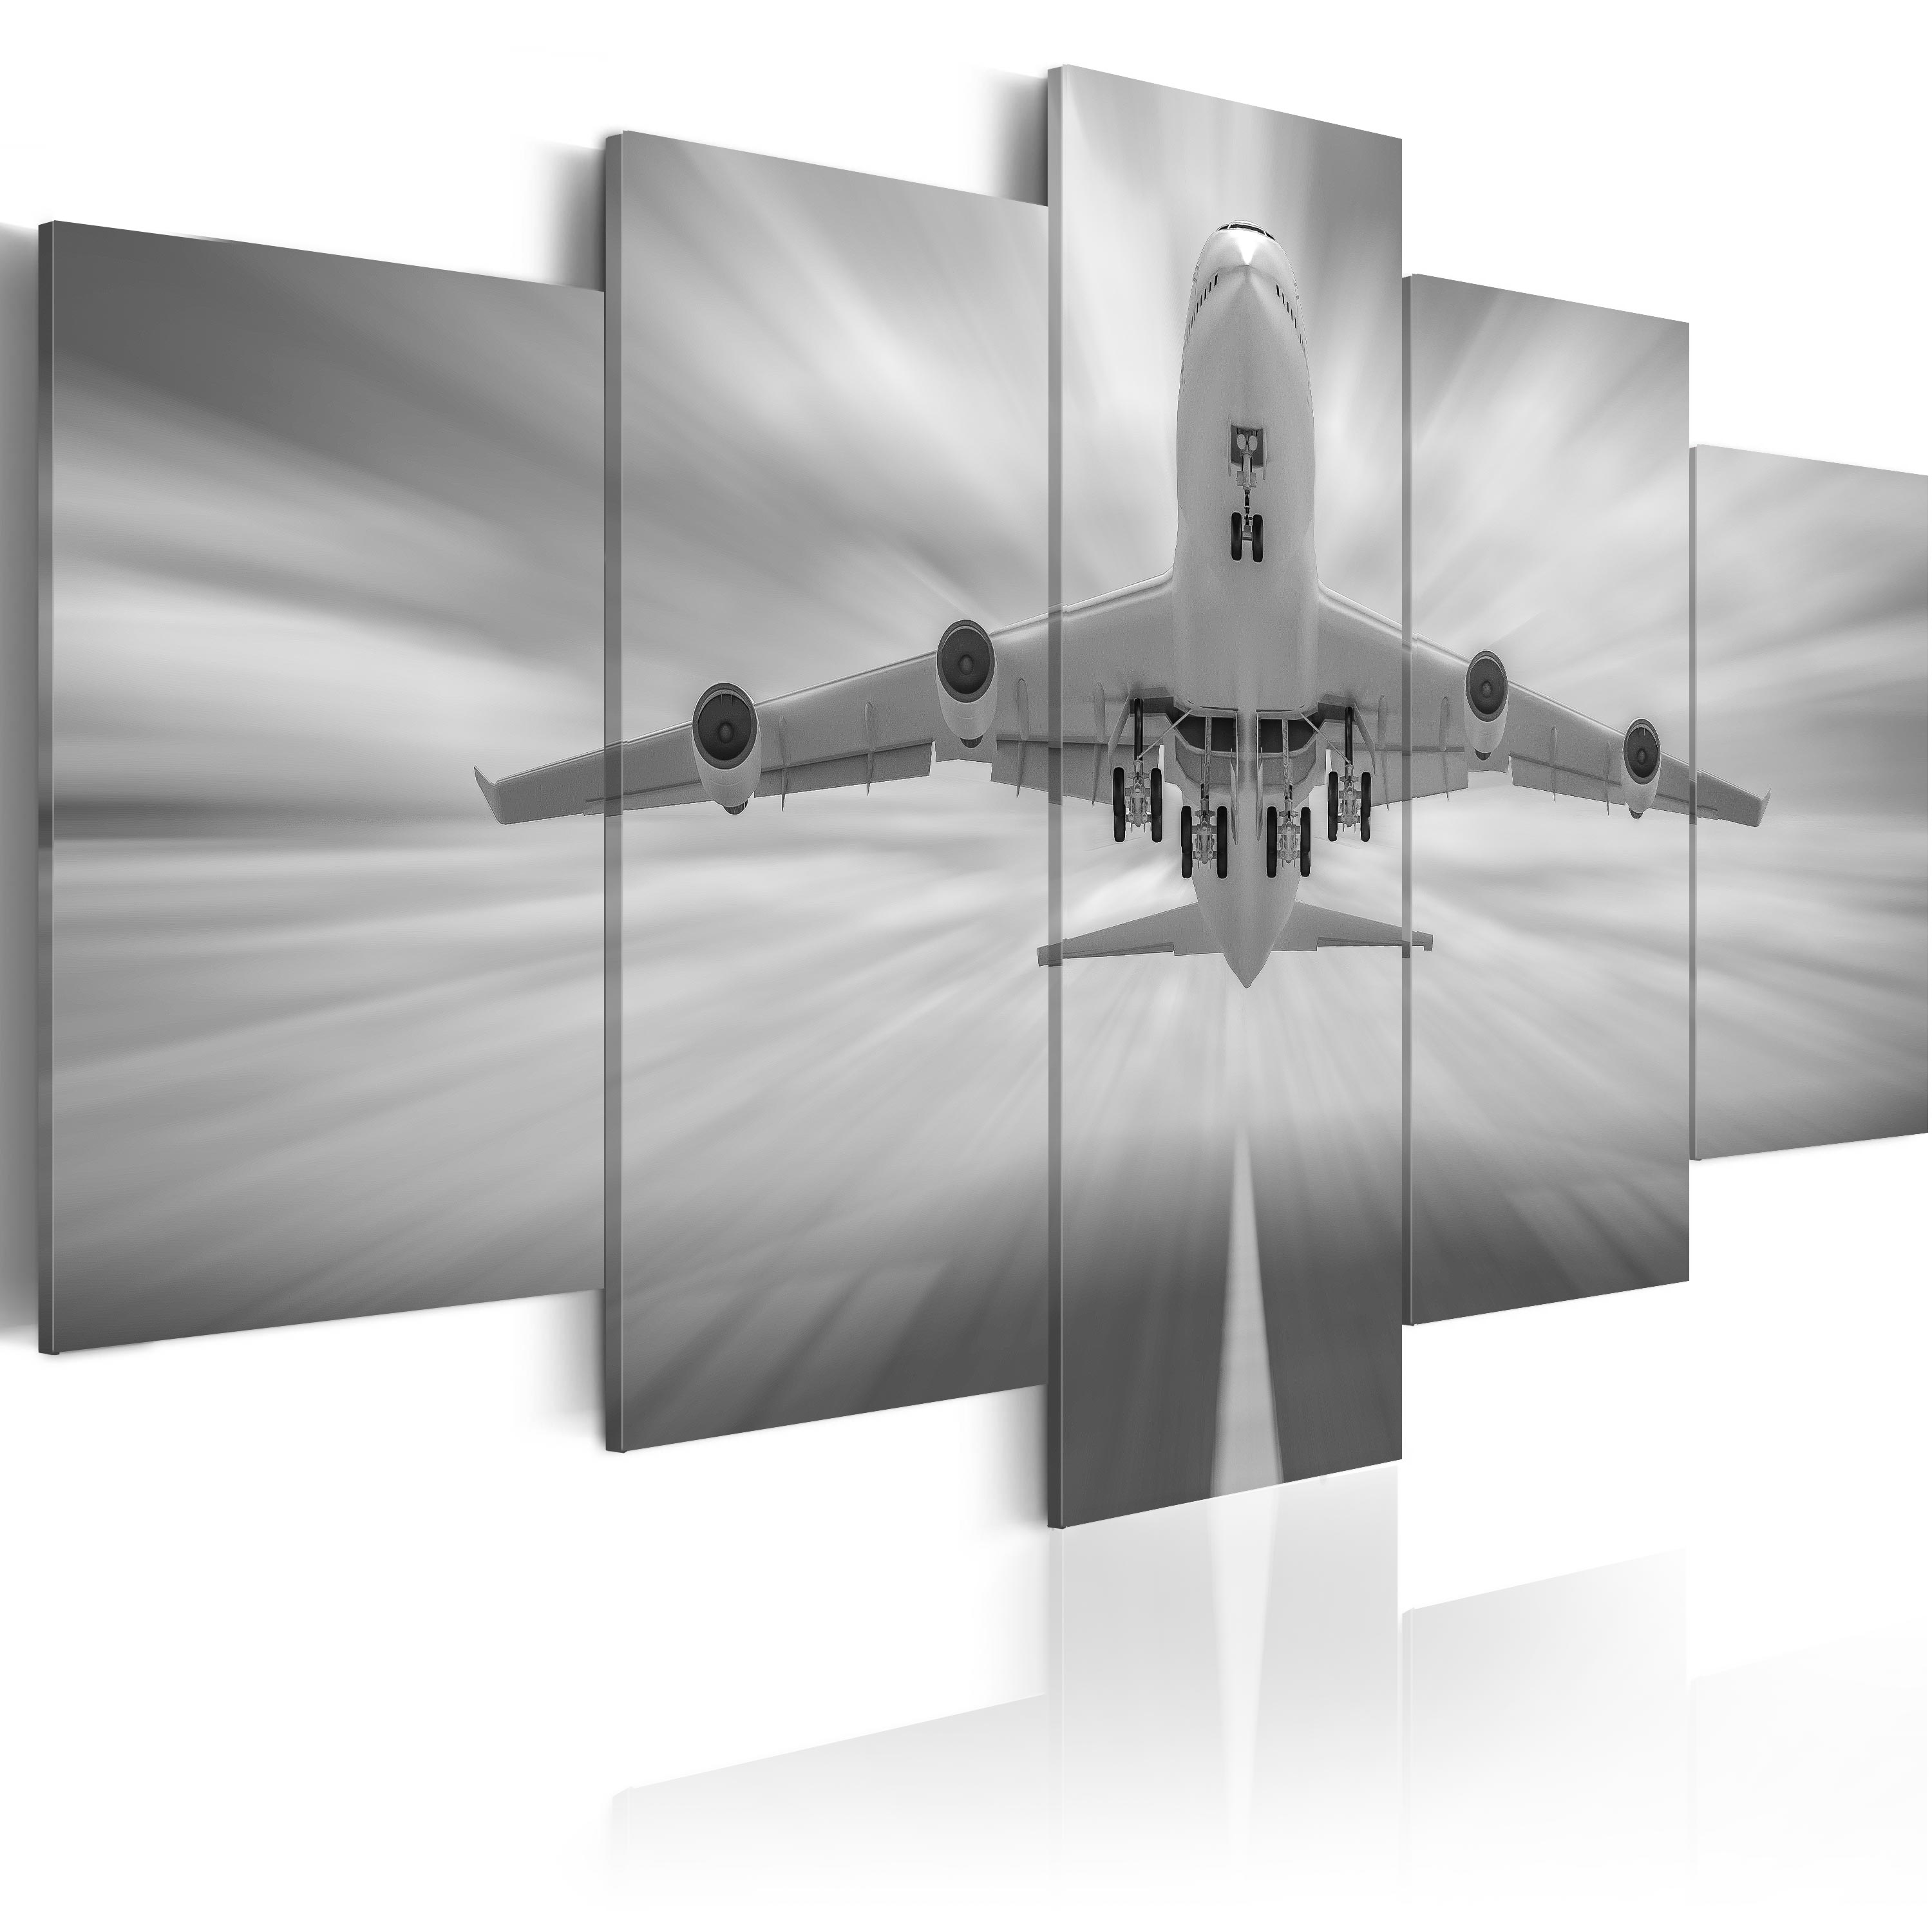 ARTGEIST - Billede i sort/hvid af et fly trykt på lærred - Flere størrelser 200x100